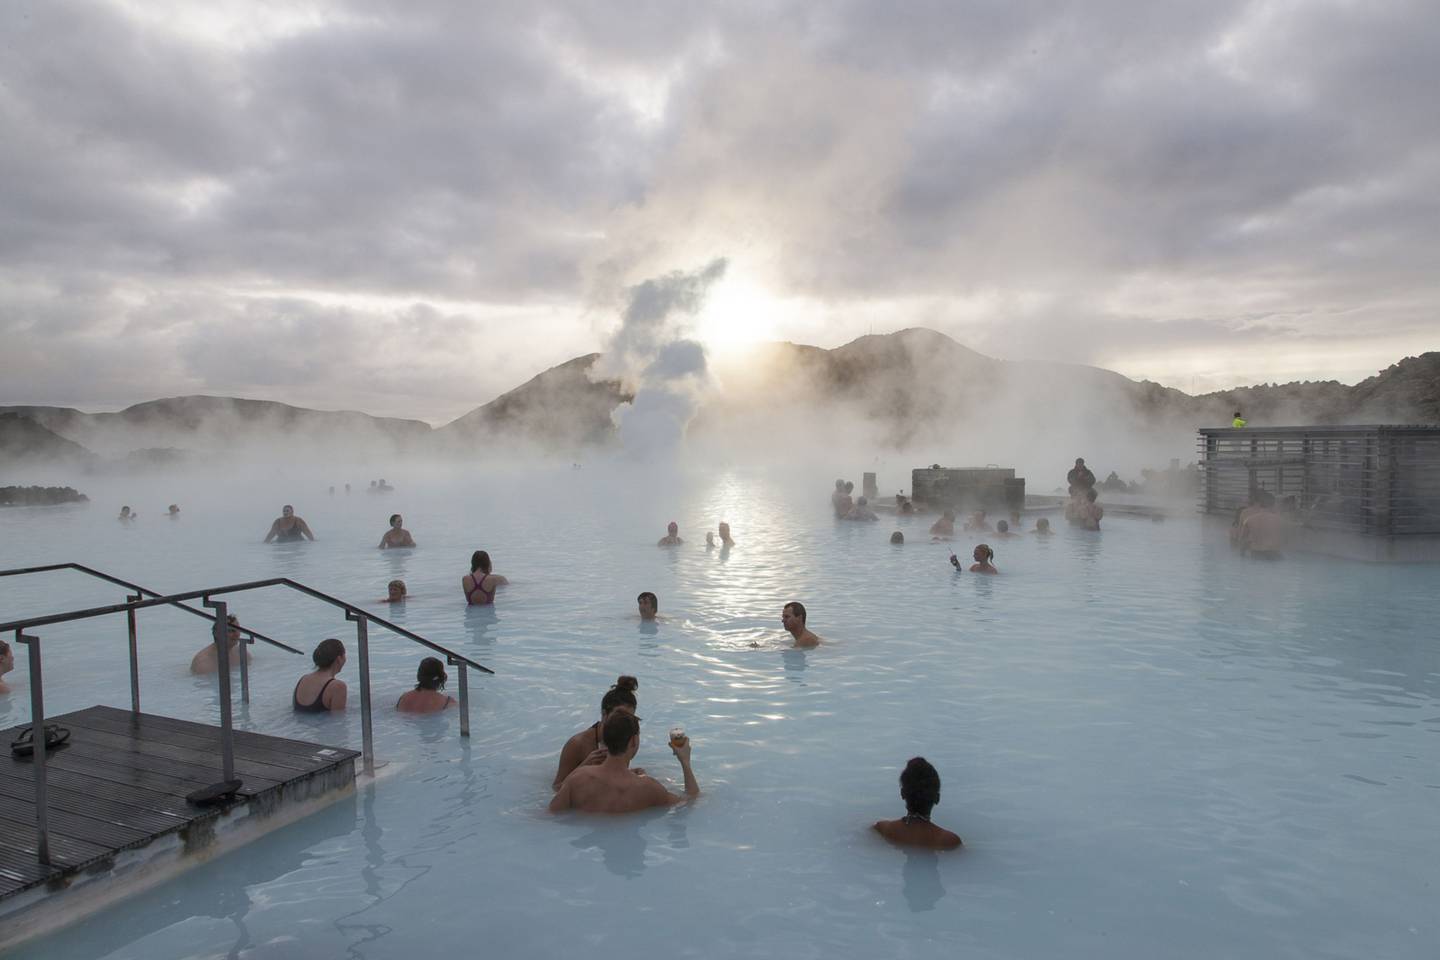 Los islandeses consideran las piscinas geotérmicas un recurso esencial durante los fríos y oscuros inviernos. Fotógrafo: Arnaldur Halldorsson/Bloombergdfd